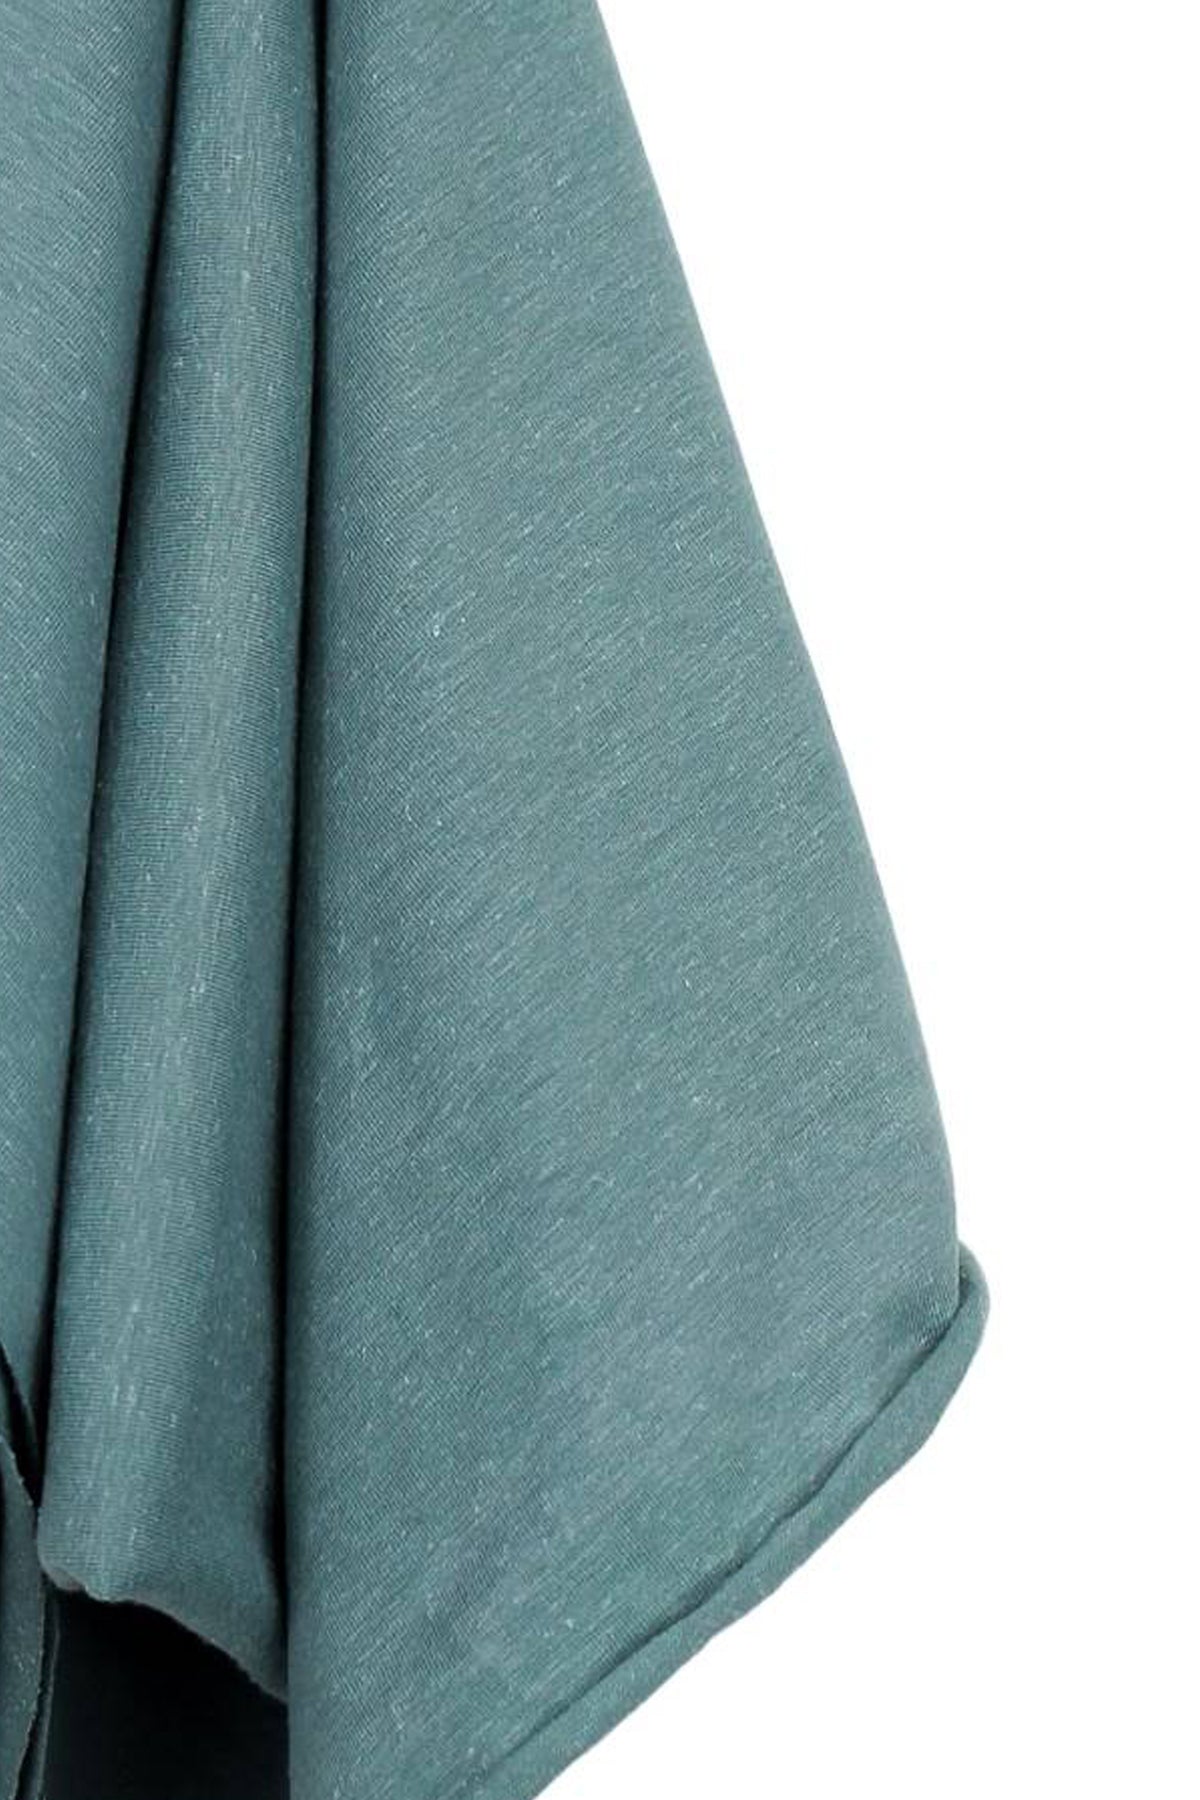 Heavy Hemp & Lycra Jersey 300g  Sustainble Planet-Friendly Fabric!